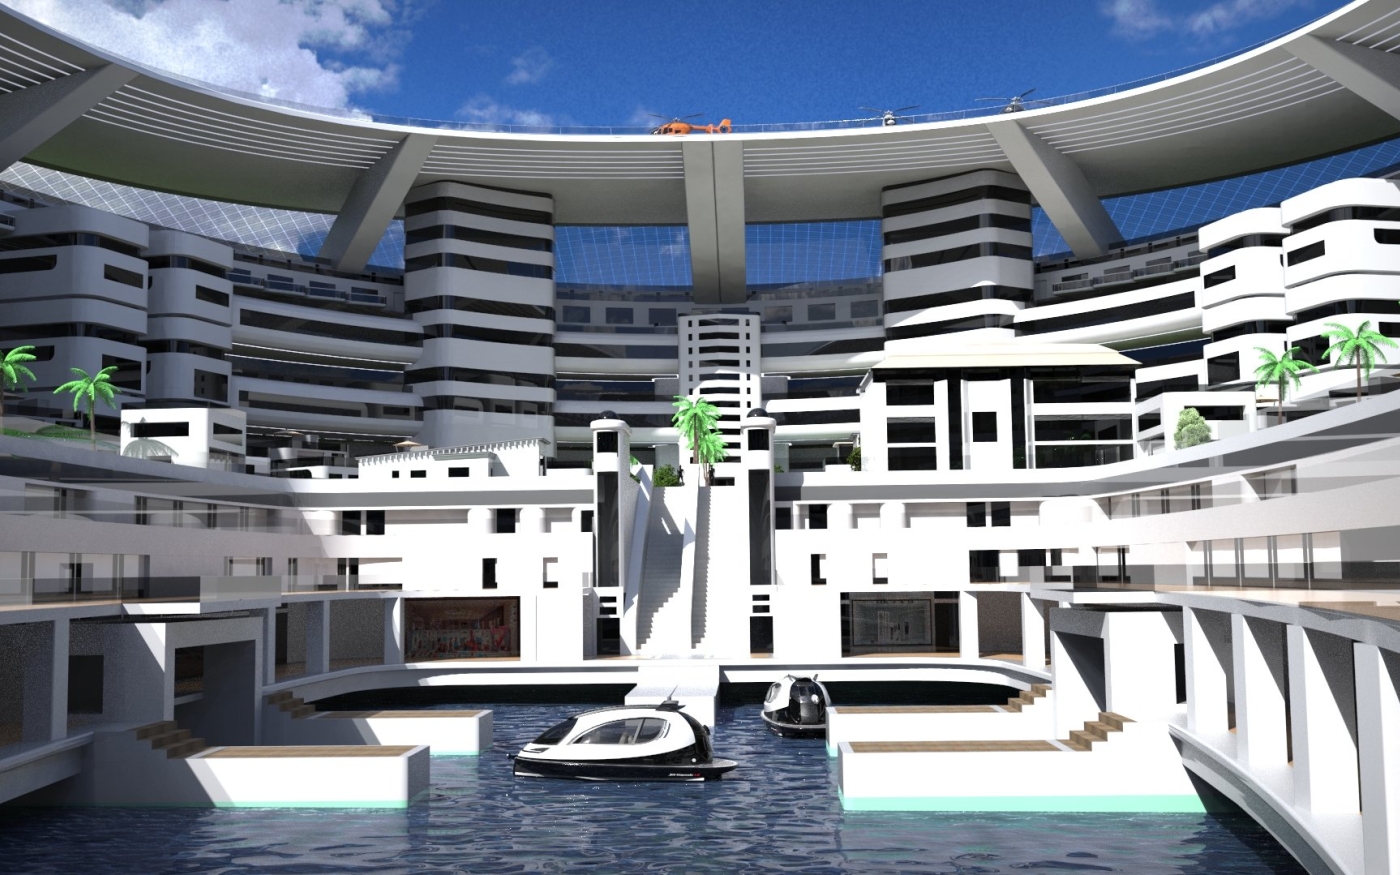 Le térayacht Pangeos comportera des hôtels, des villas VIP et des jardins sur les toits (Lazzarini Design Studio)